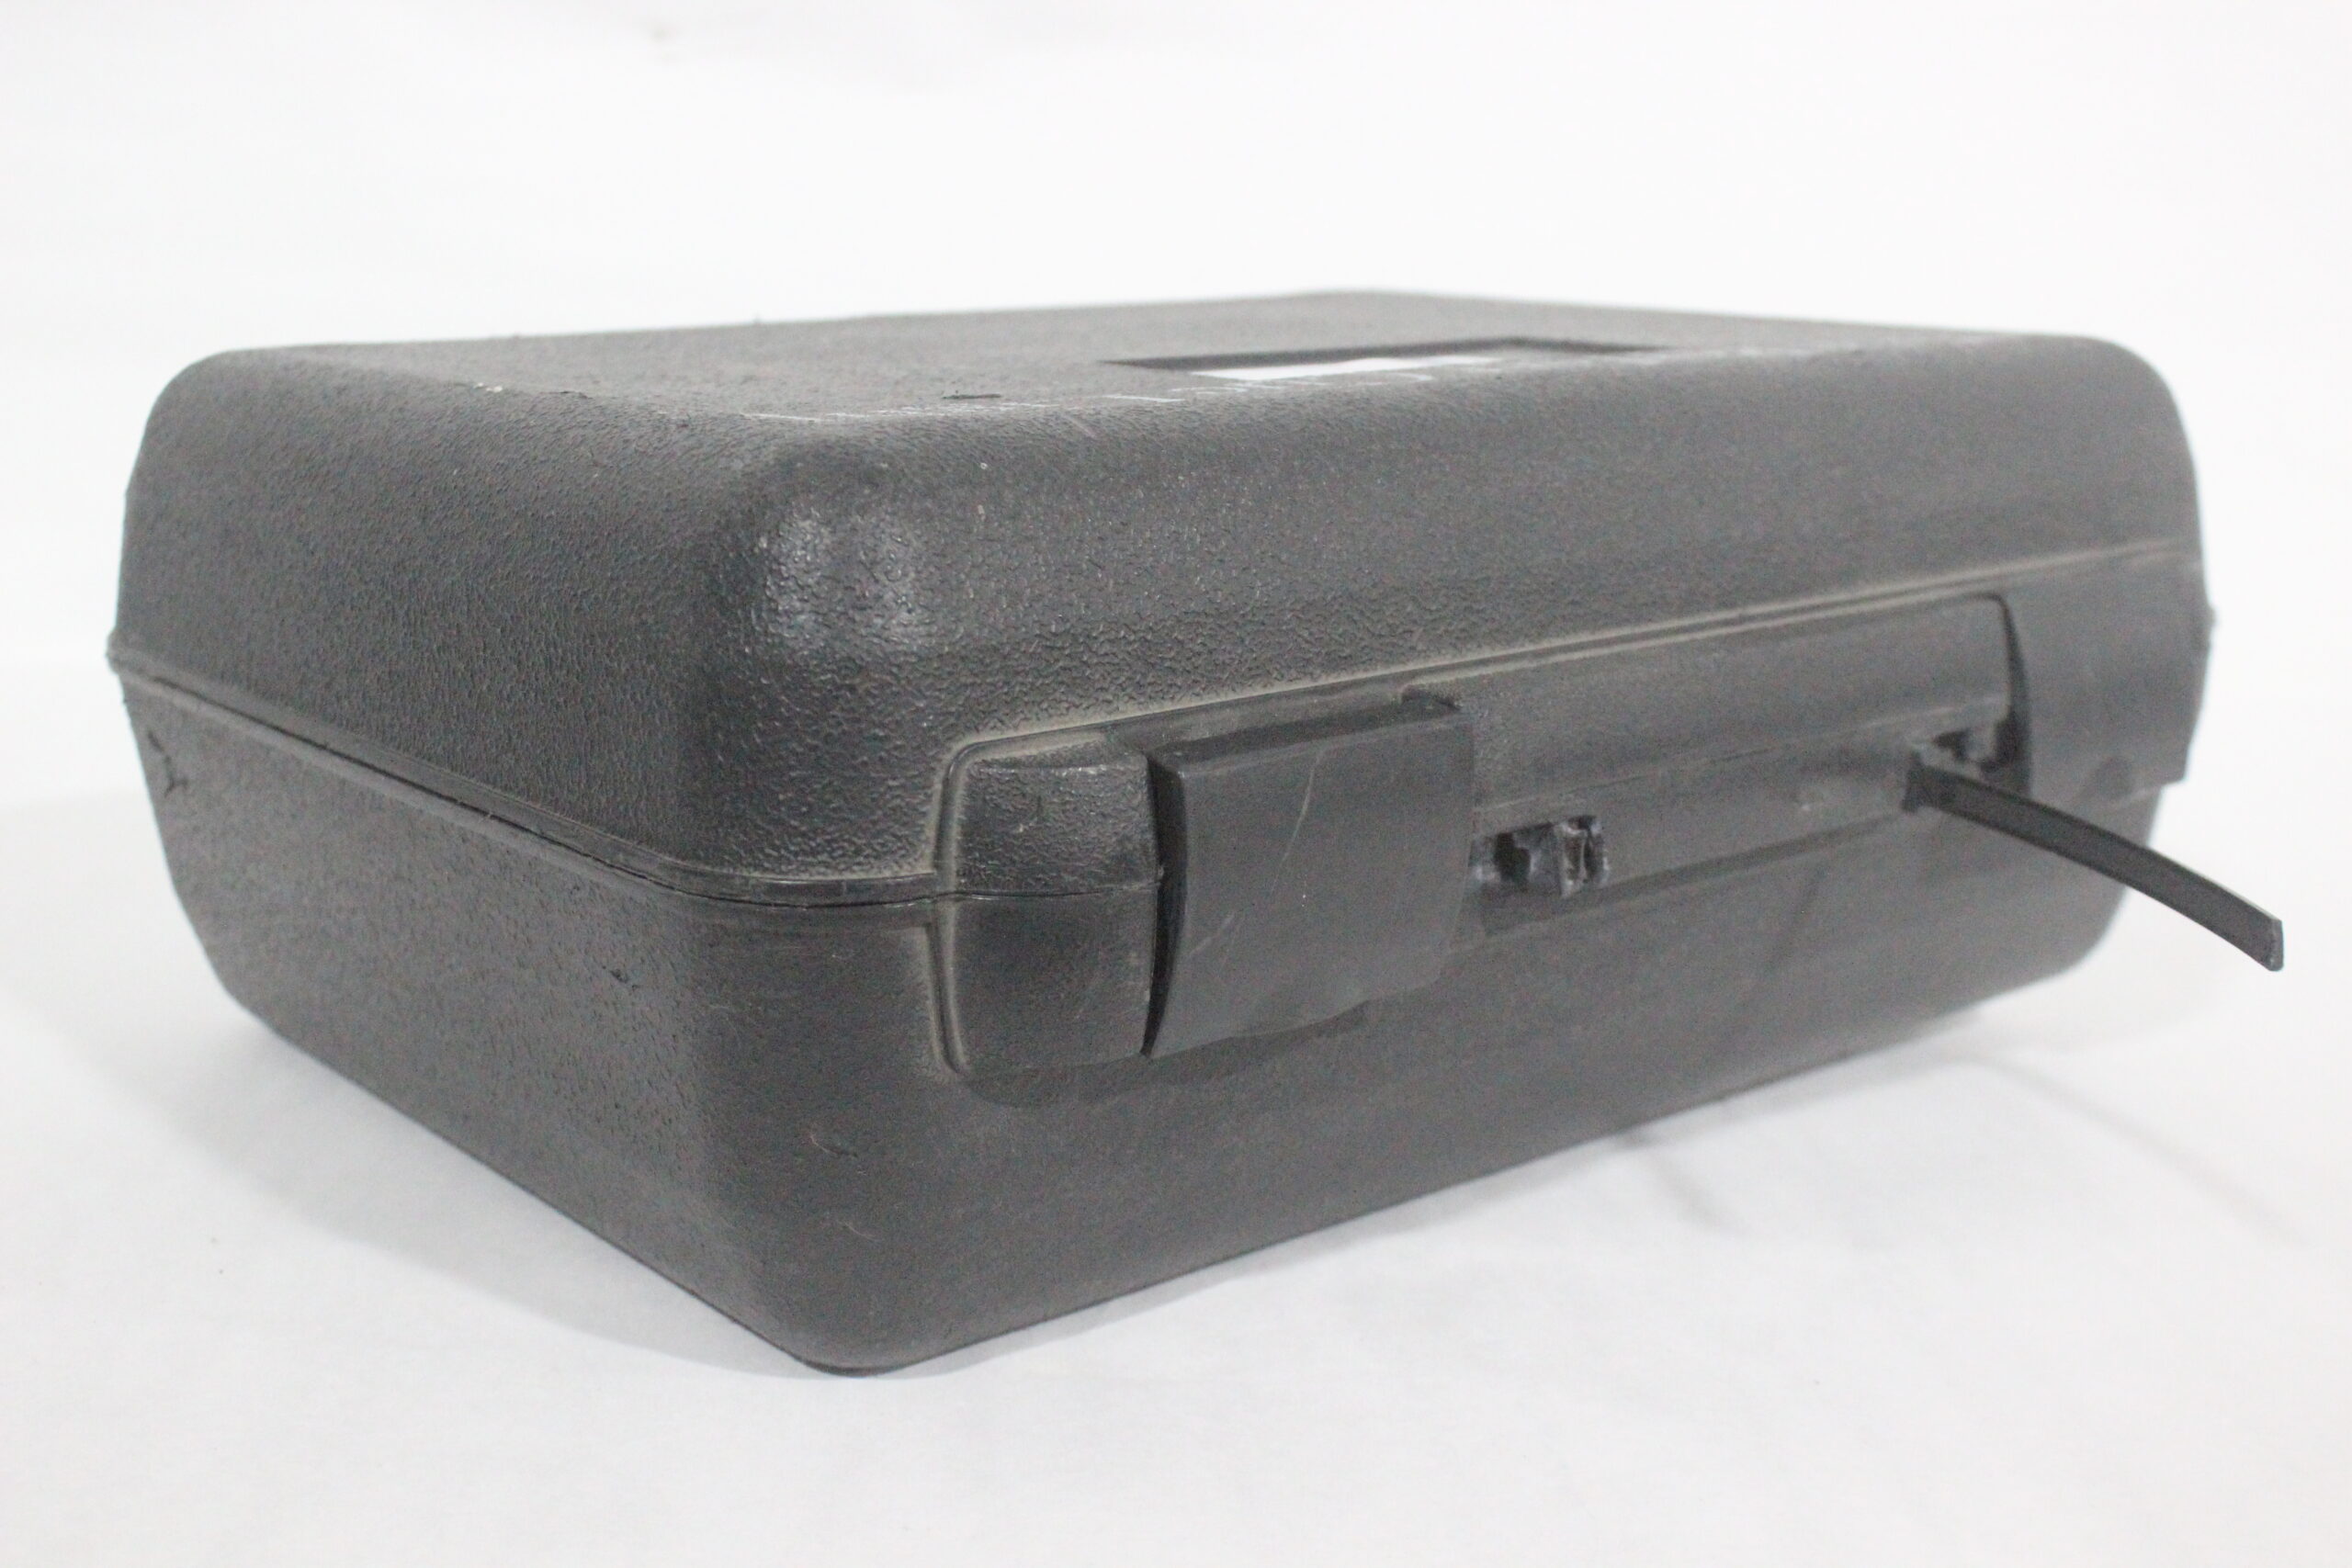 Fastline Designer Genuine Leather Mailman Bag Leather 23.5cm Shoulder Strap  M22482 From Luxurybags2, $82.34 | DHgate.Com